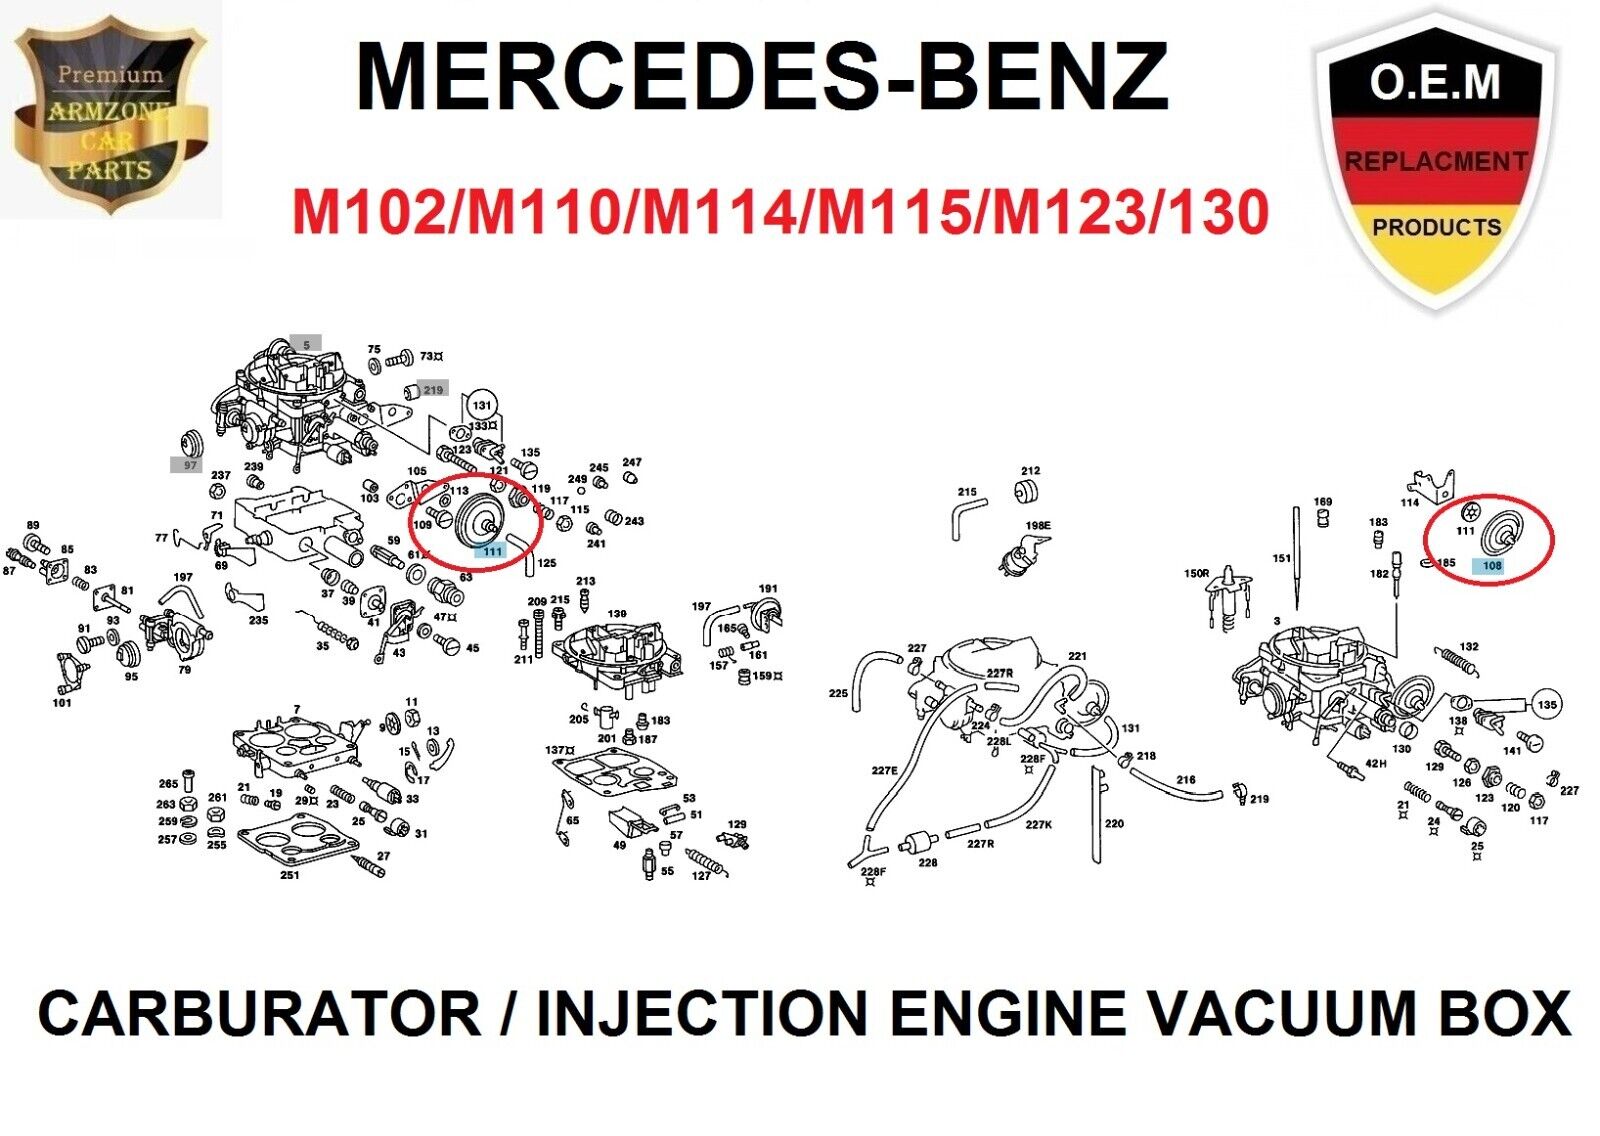 Carburator or Injection Air Vacuum Box Mercedes M102 M110 M114 M115 M123 M130